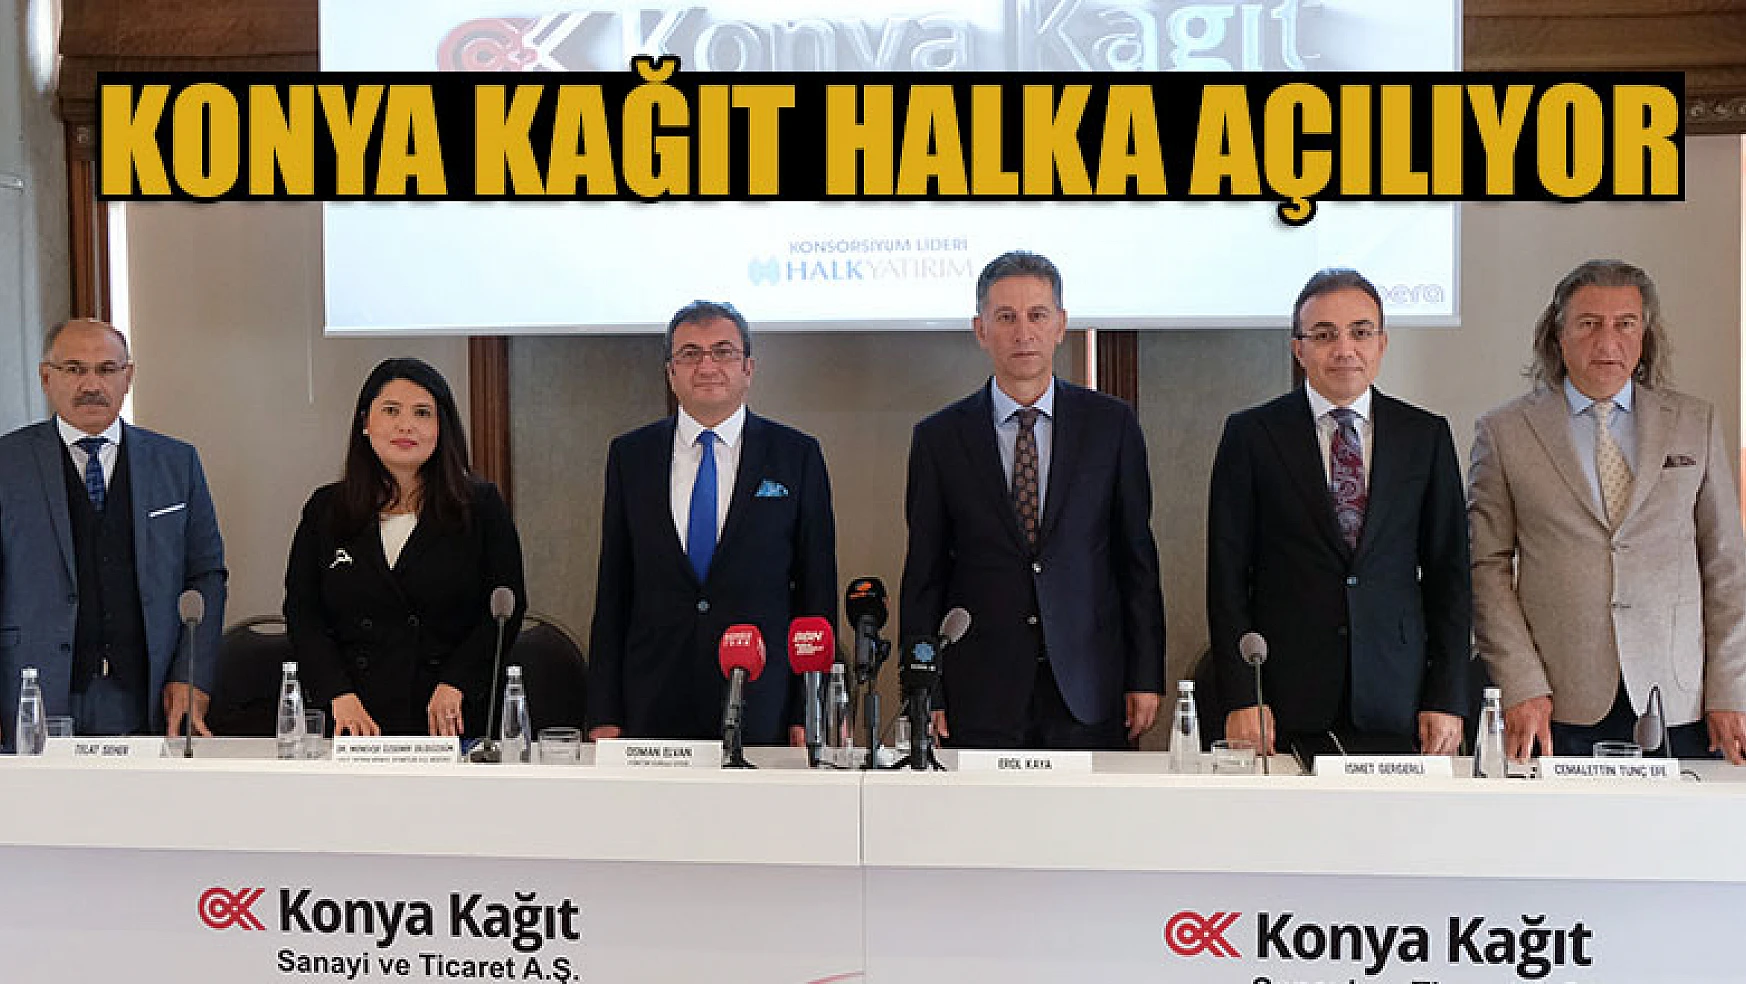 Türkiye yazı tabı kağıt üretiminin yüzde 25'ini karşılayan Konya Kağıt halka açılıyor